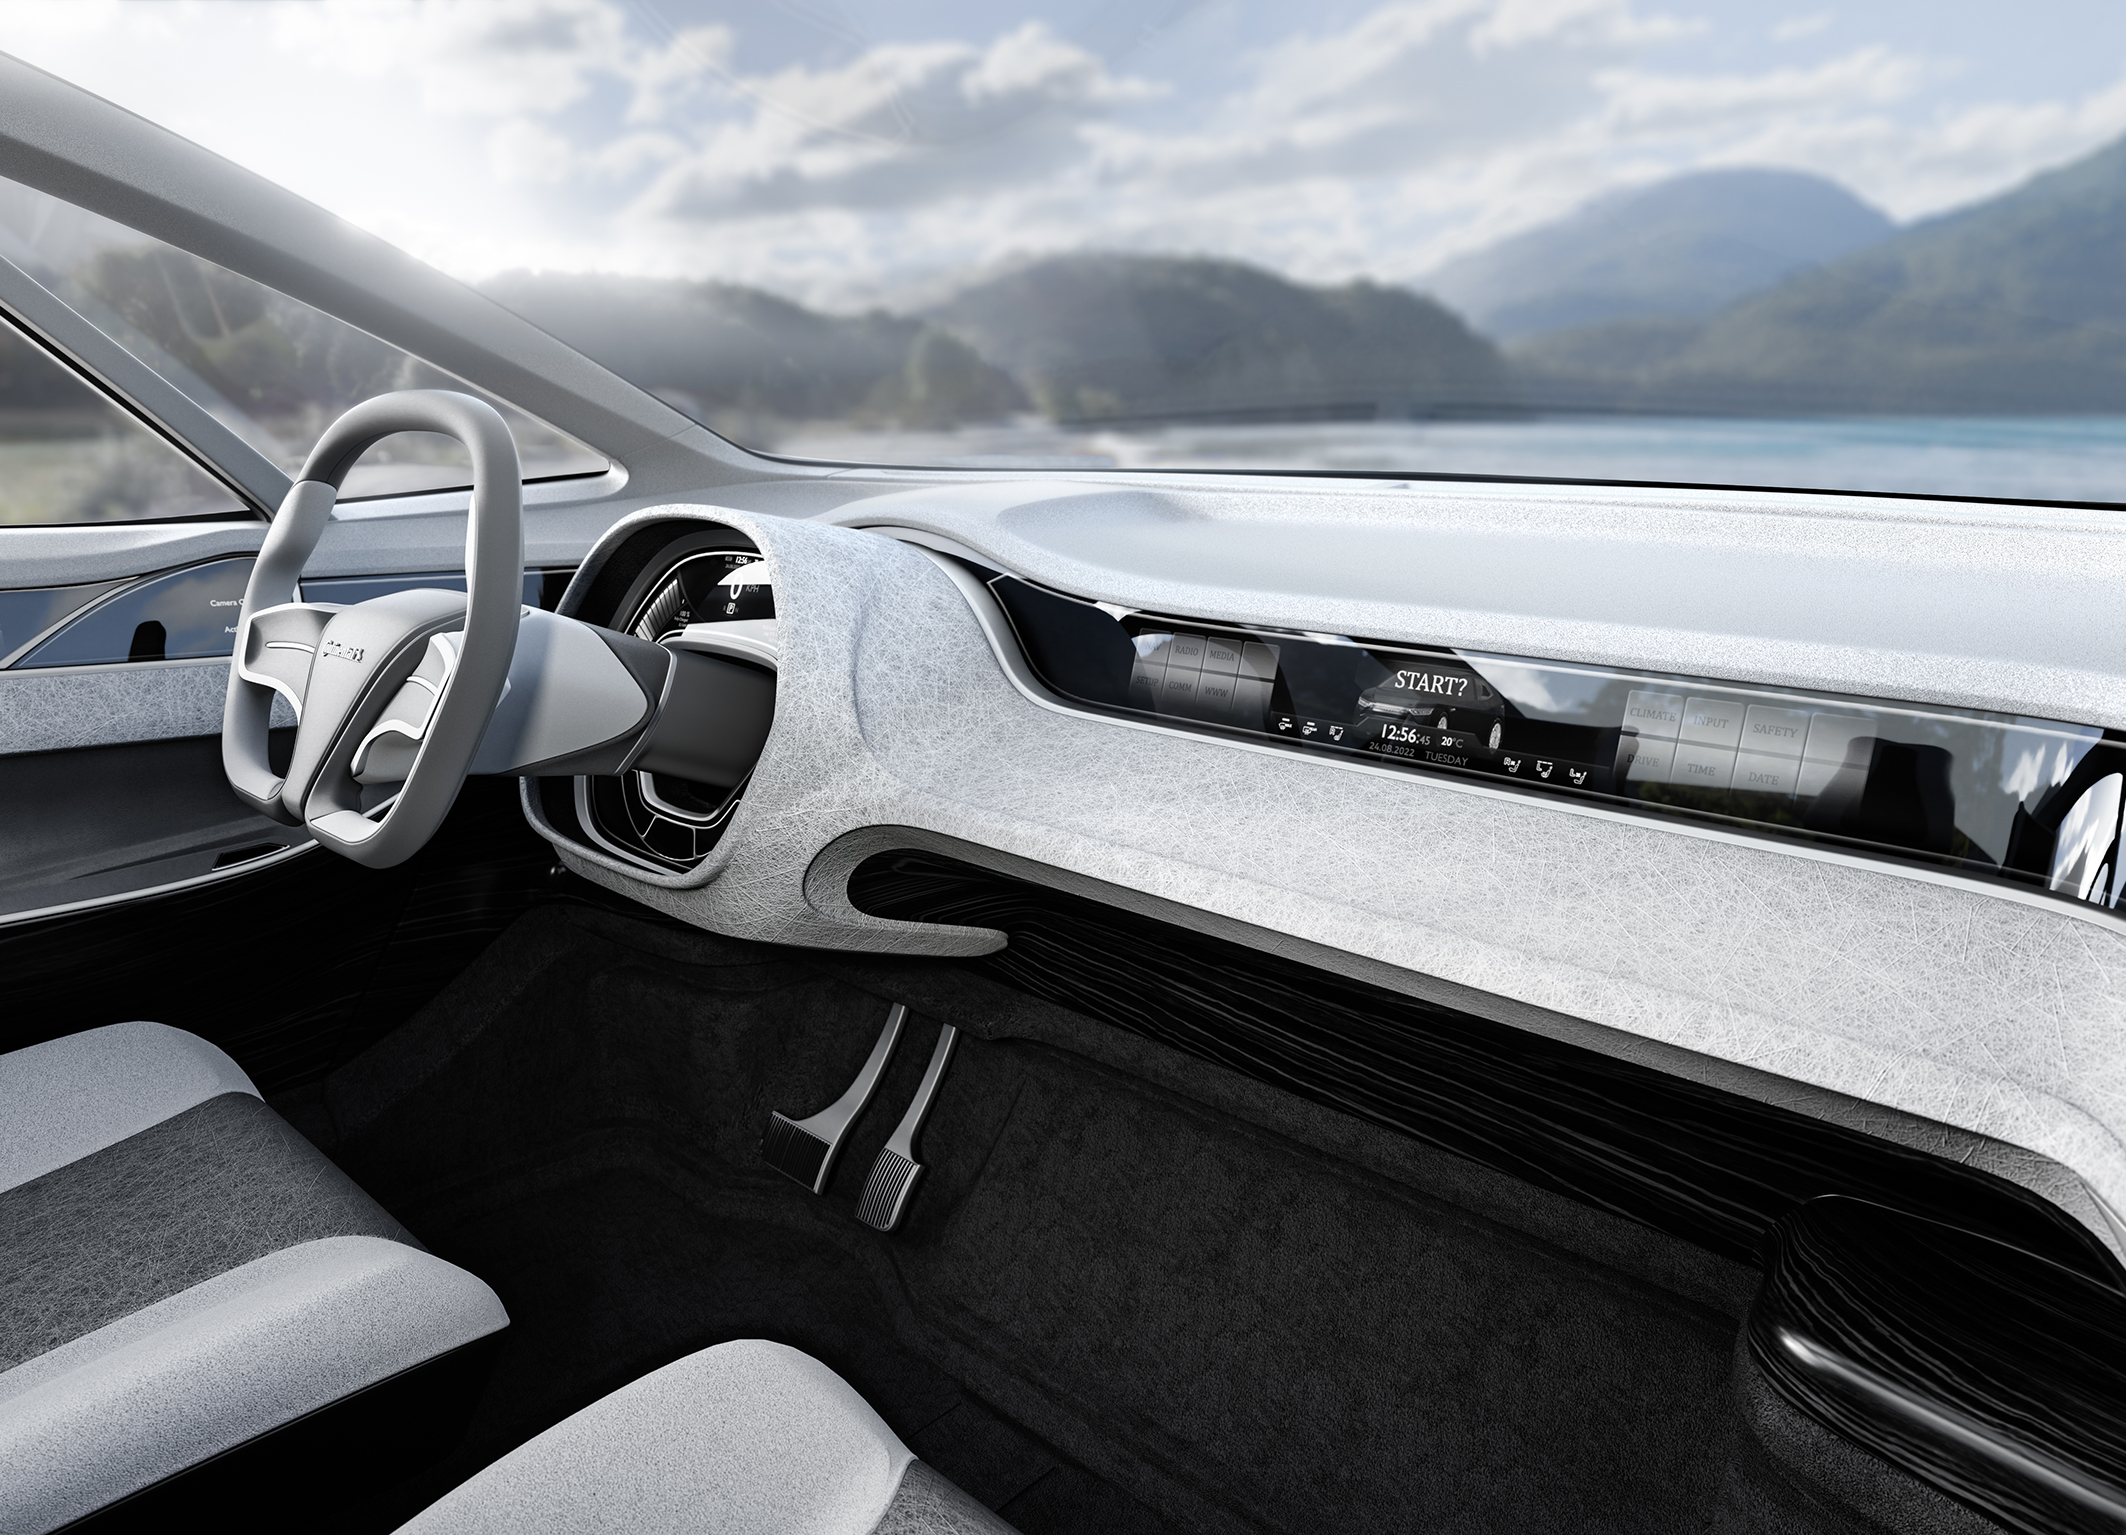 Benova Eco Protect steht für mehr Nachhaltigkeit, Langlebigkeit und Komfort im Fahrzeuginnenraum.